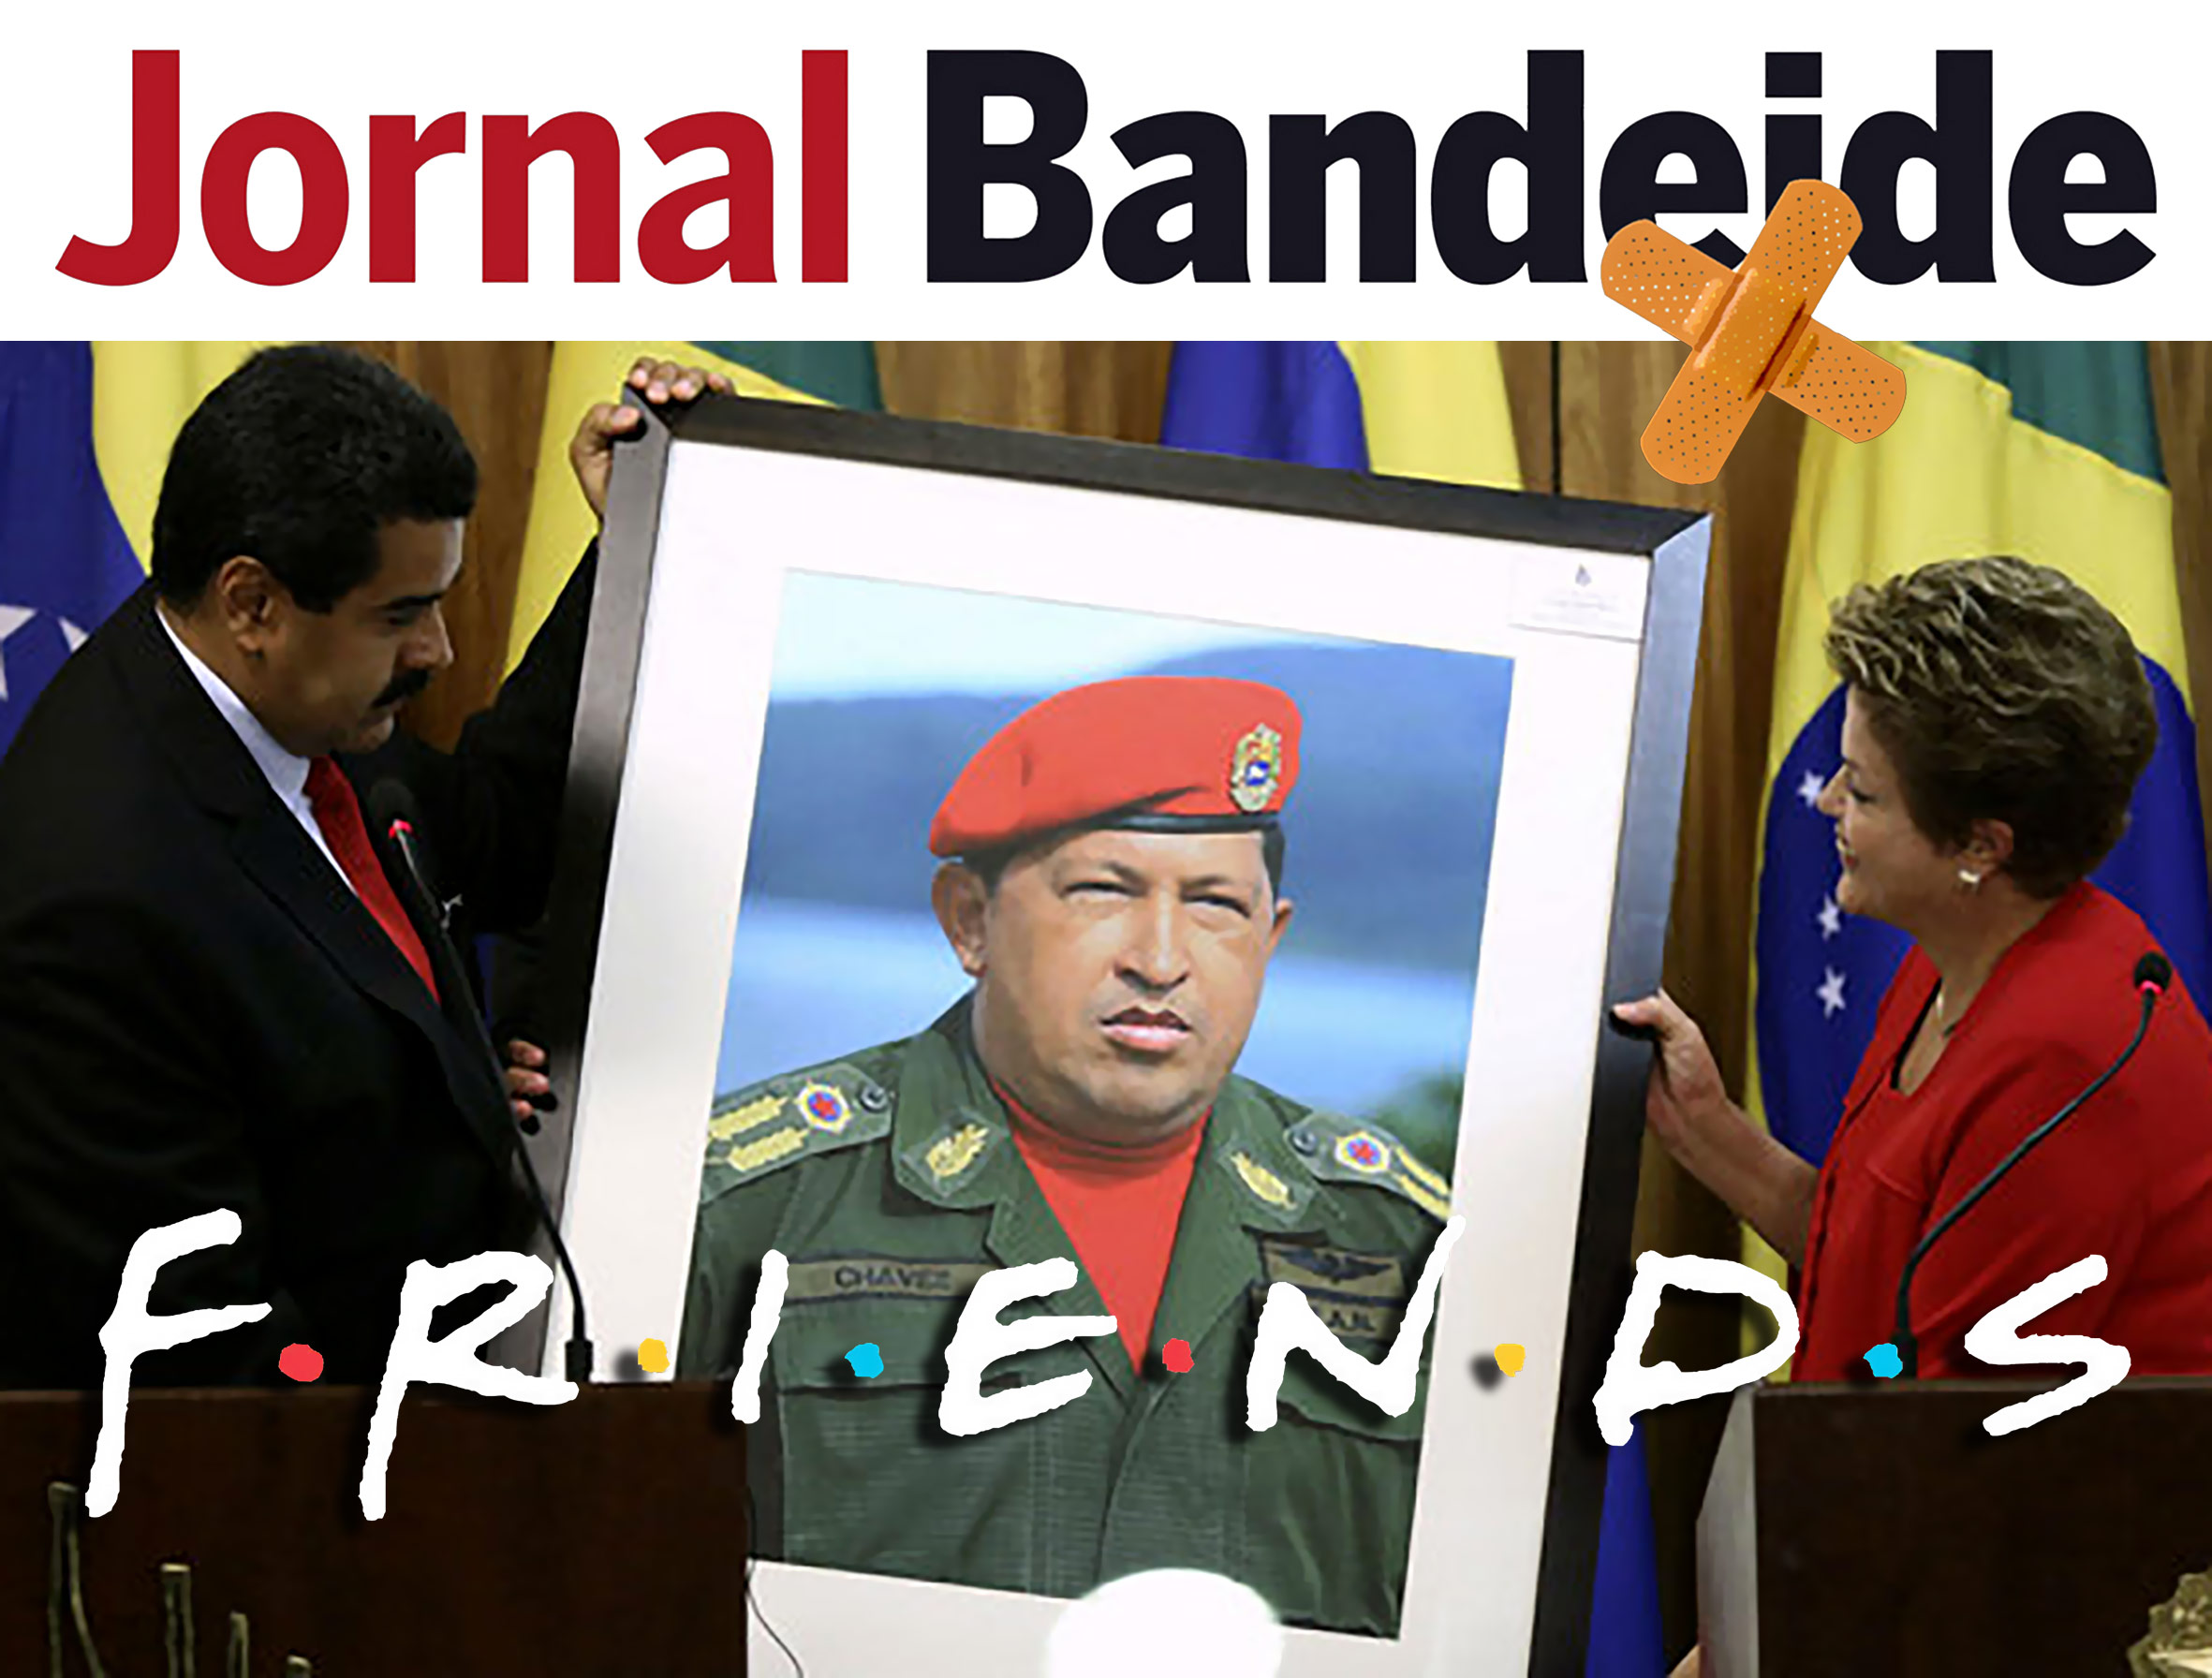 Nicolas-Maduro-presidente-da-Venezuela-presenteia-presidente-Dilma-Rousseff-com-uma-imagem-do-falecido-coronel-Hugo-Chavez-size-598